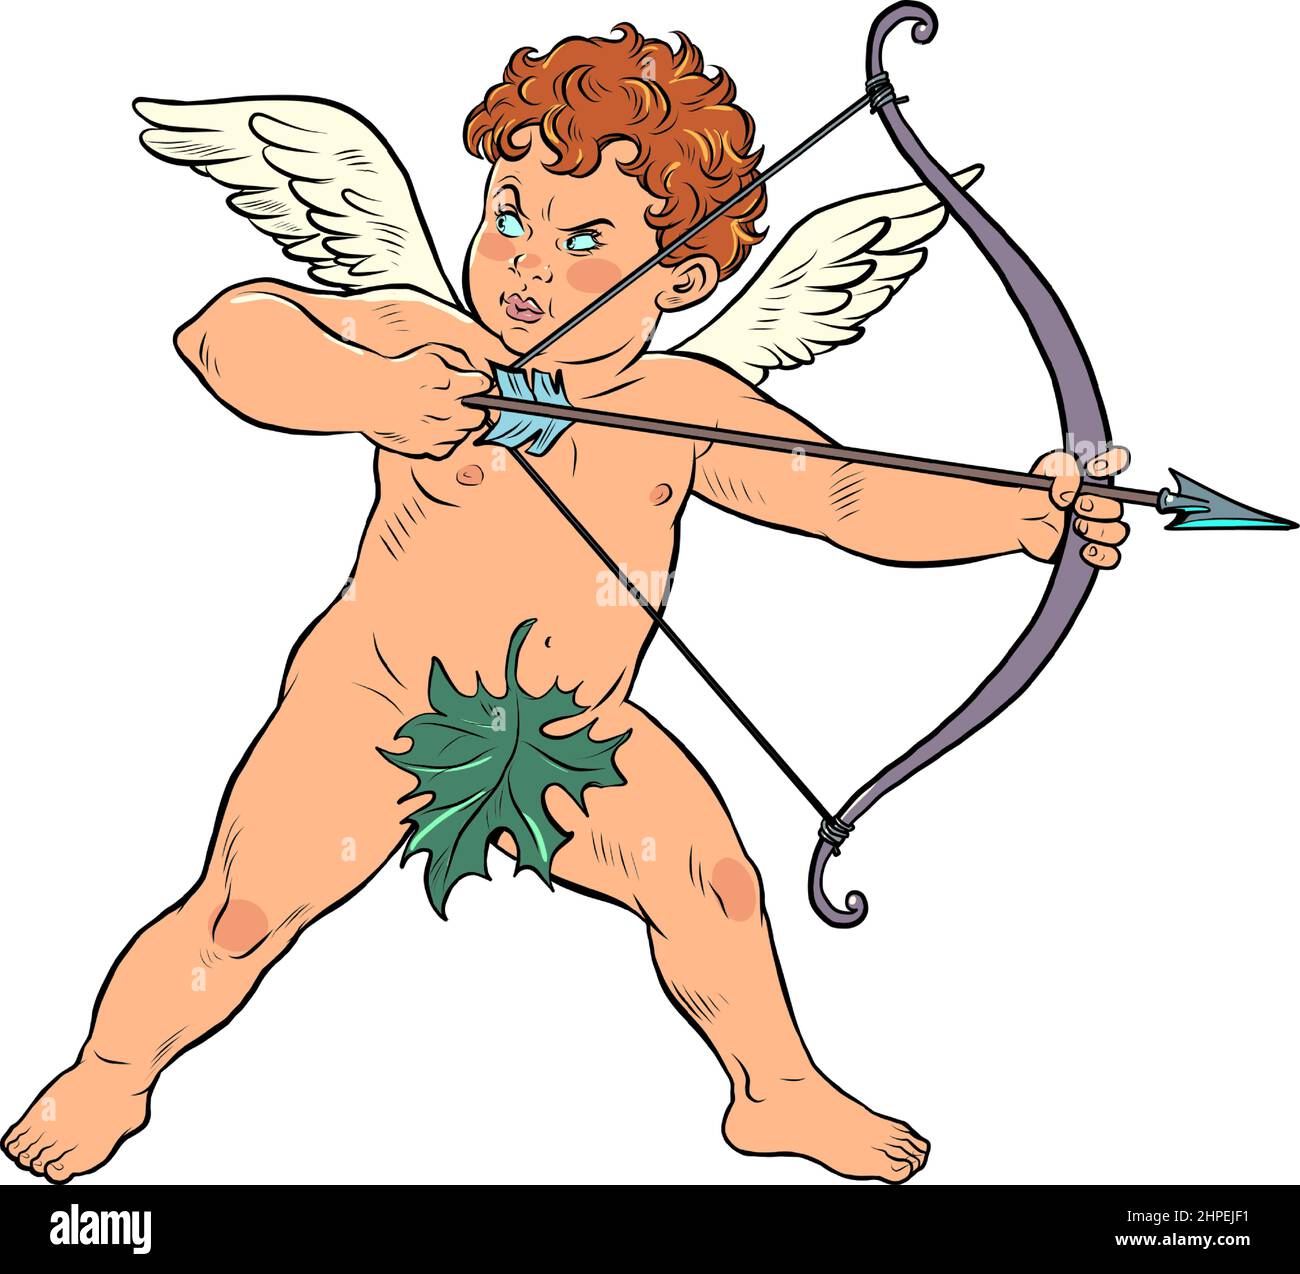 Bébé ange Cupidon avec un arc et une flèche, un personnage mythique de l'amour Illustration de Vecteur